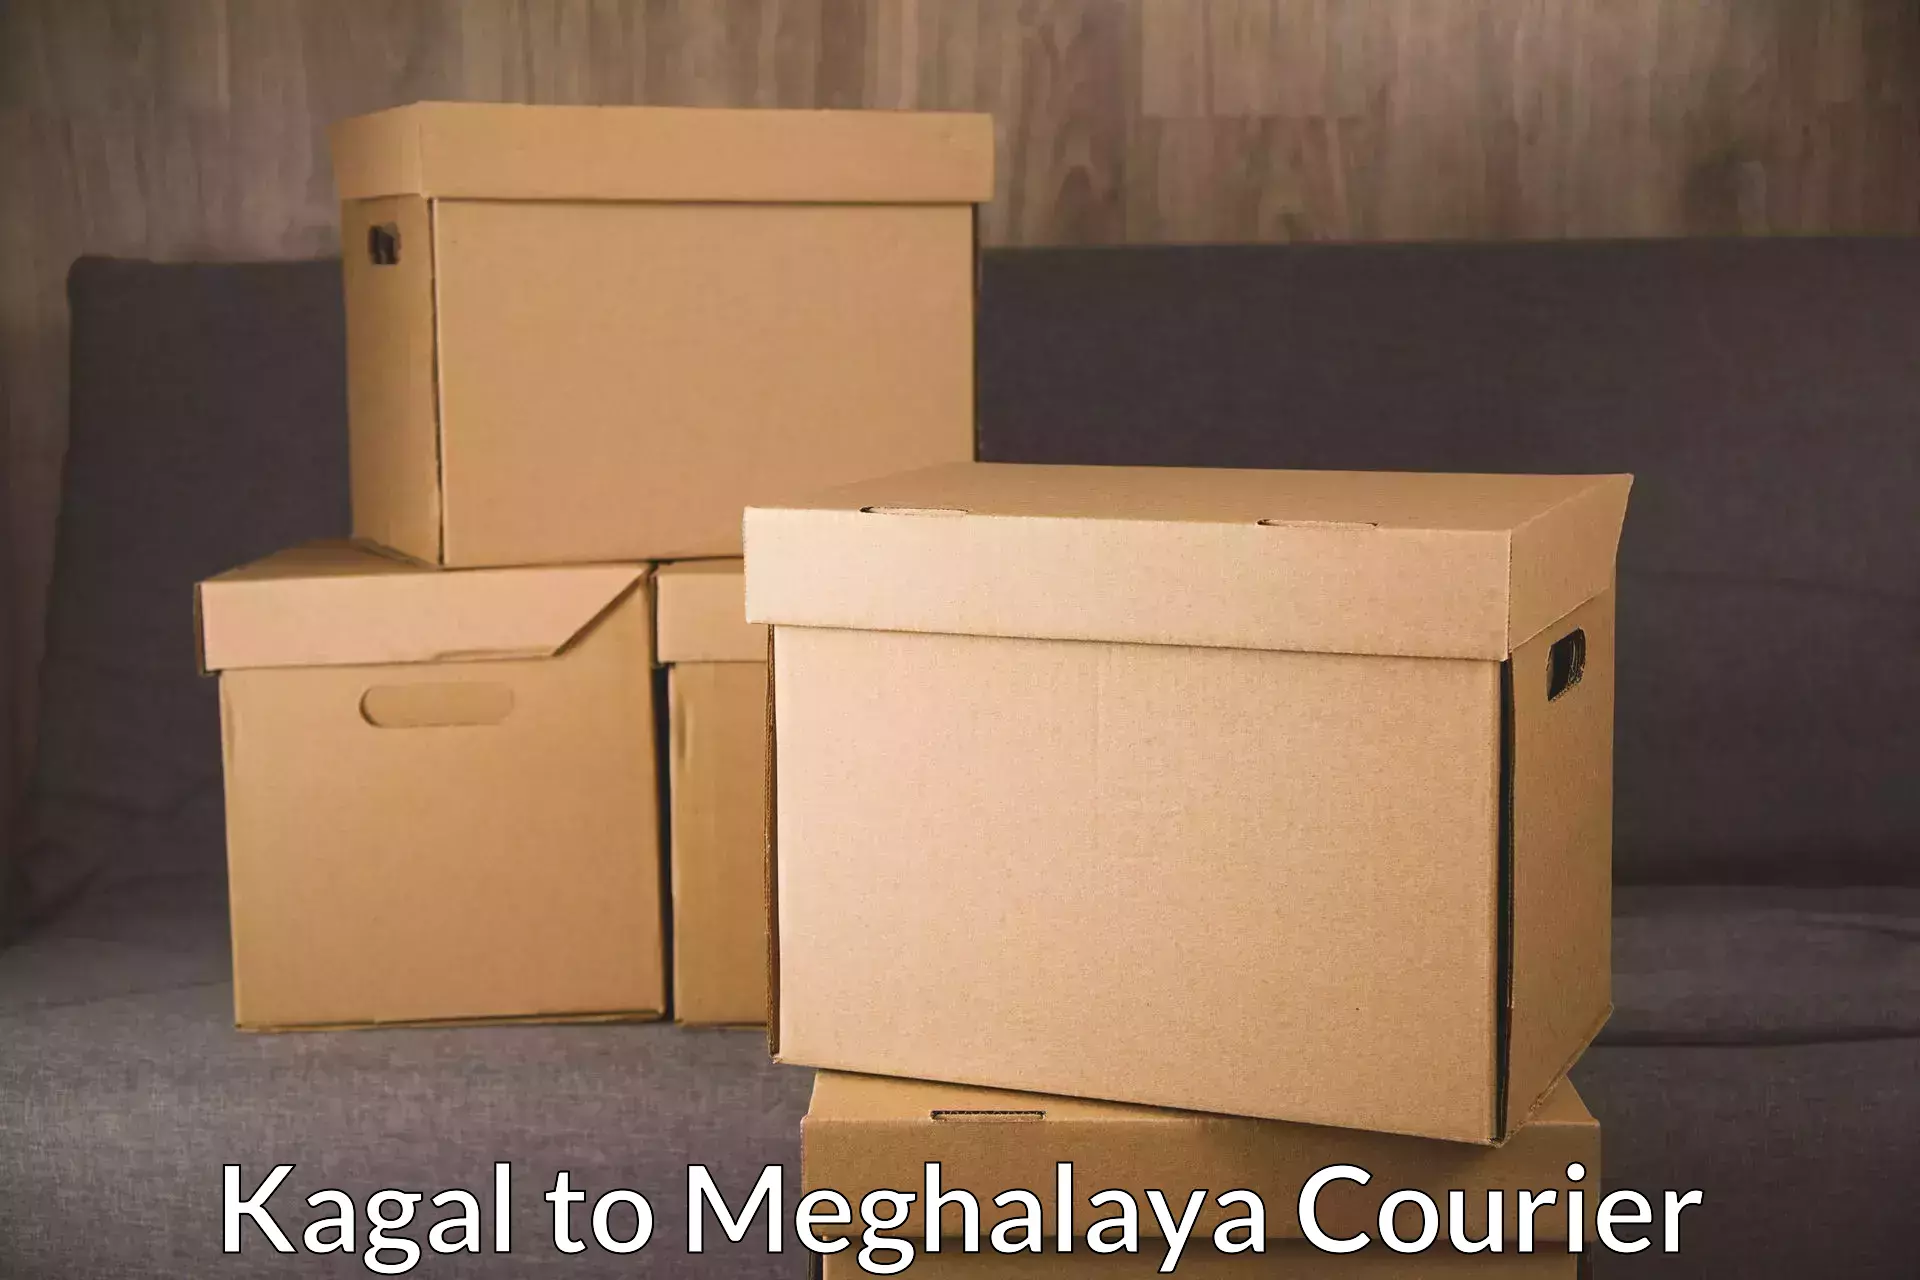 Tracking updates Kagal to Meghalaya